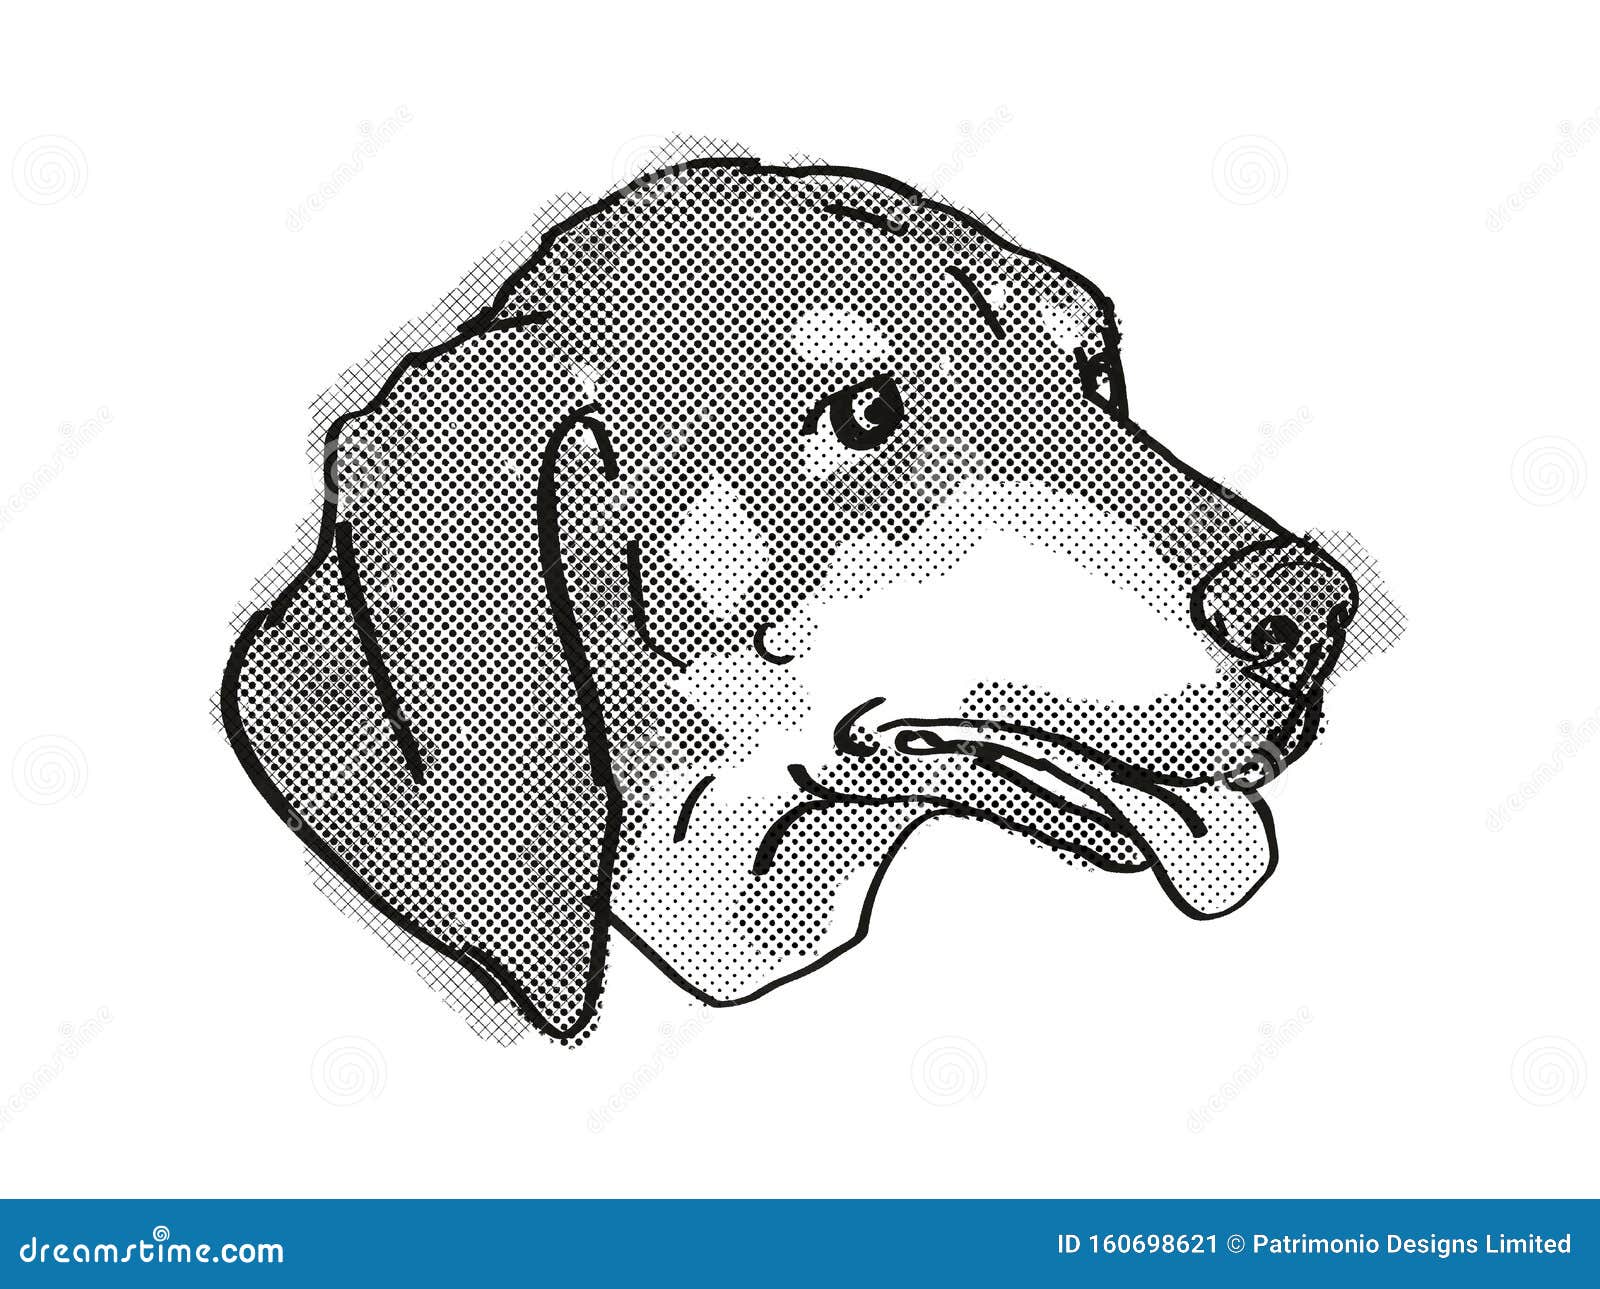 Black Coonhound Tan Stock Illustrations 32 Black Coonhound Tan Stock Illustrations Vectors Clipart Dreamstime